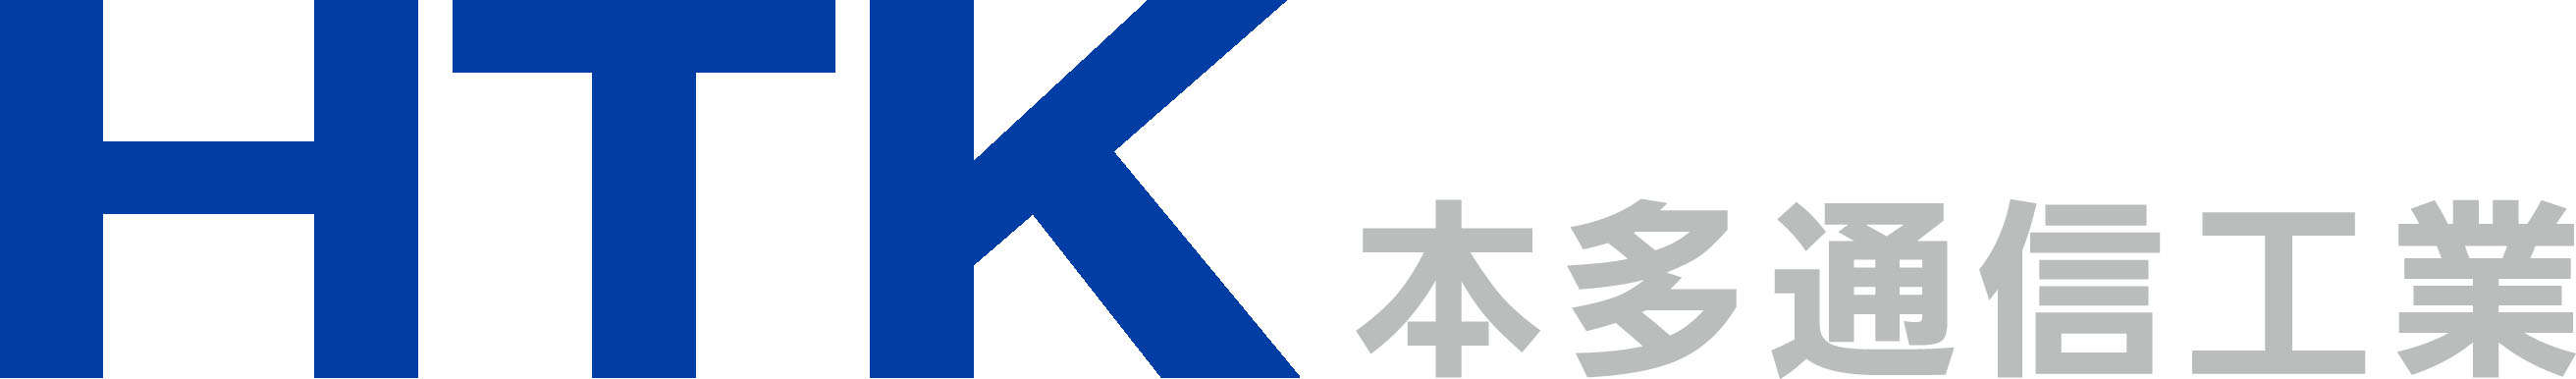 104_HTK(青)＋横 本多通信(グレー).jpg